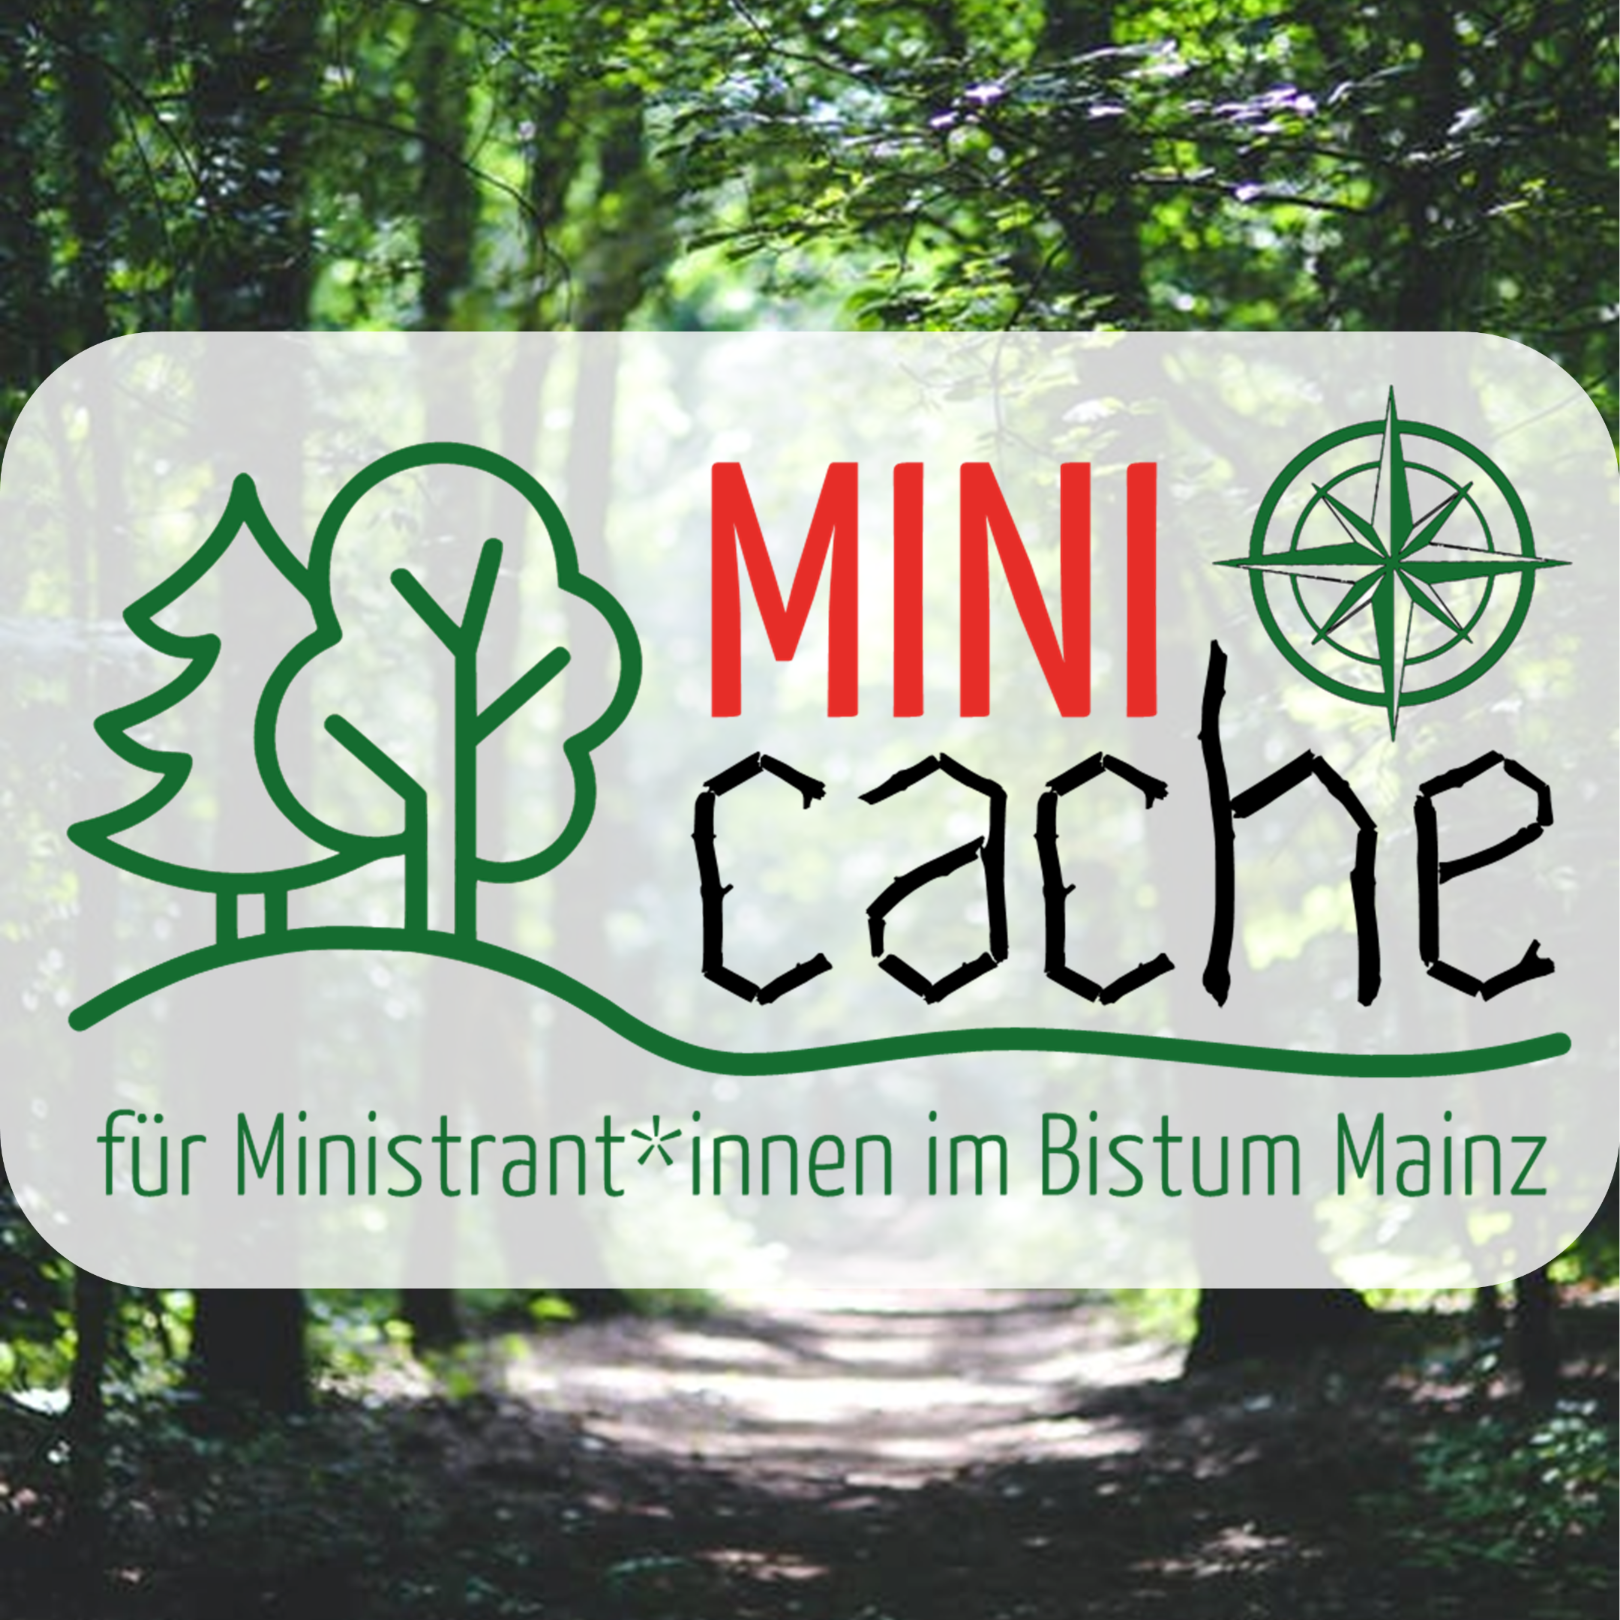 Minicache (c) Referat Ministrant*innen